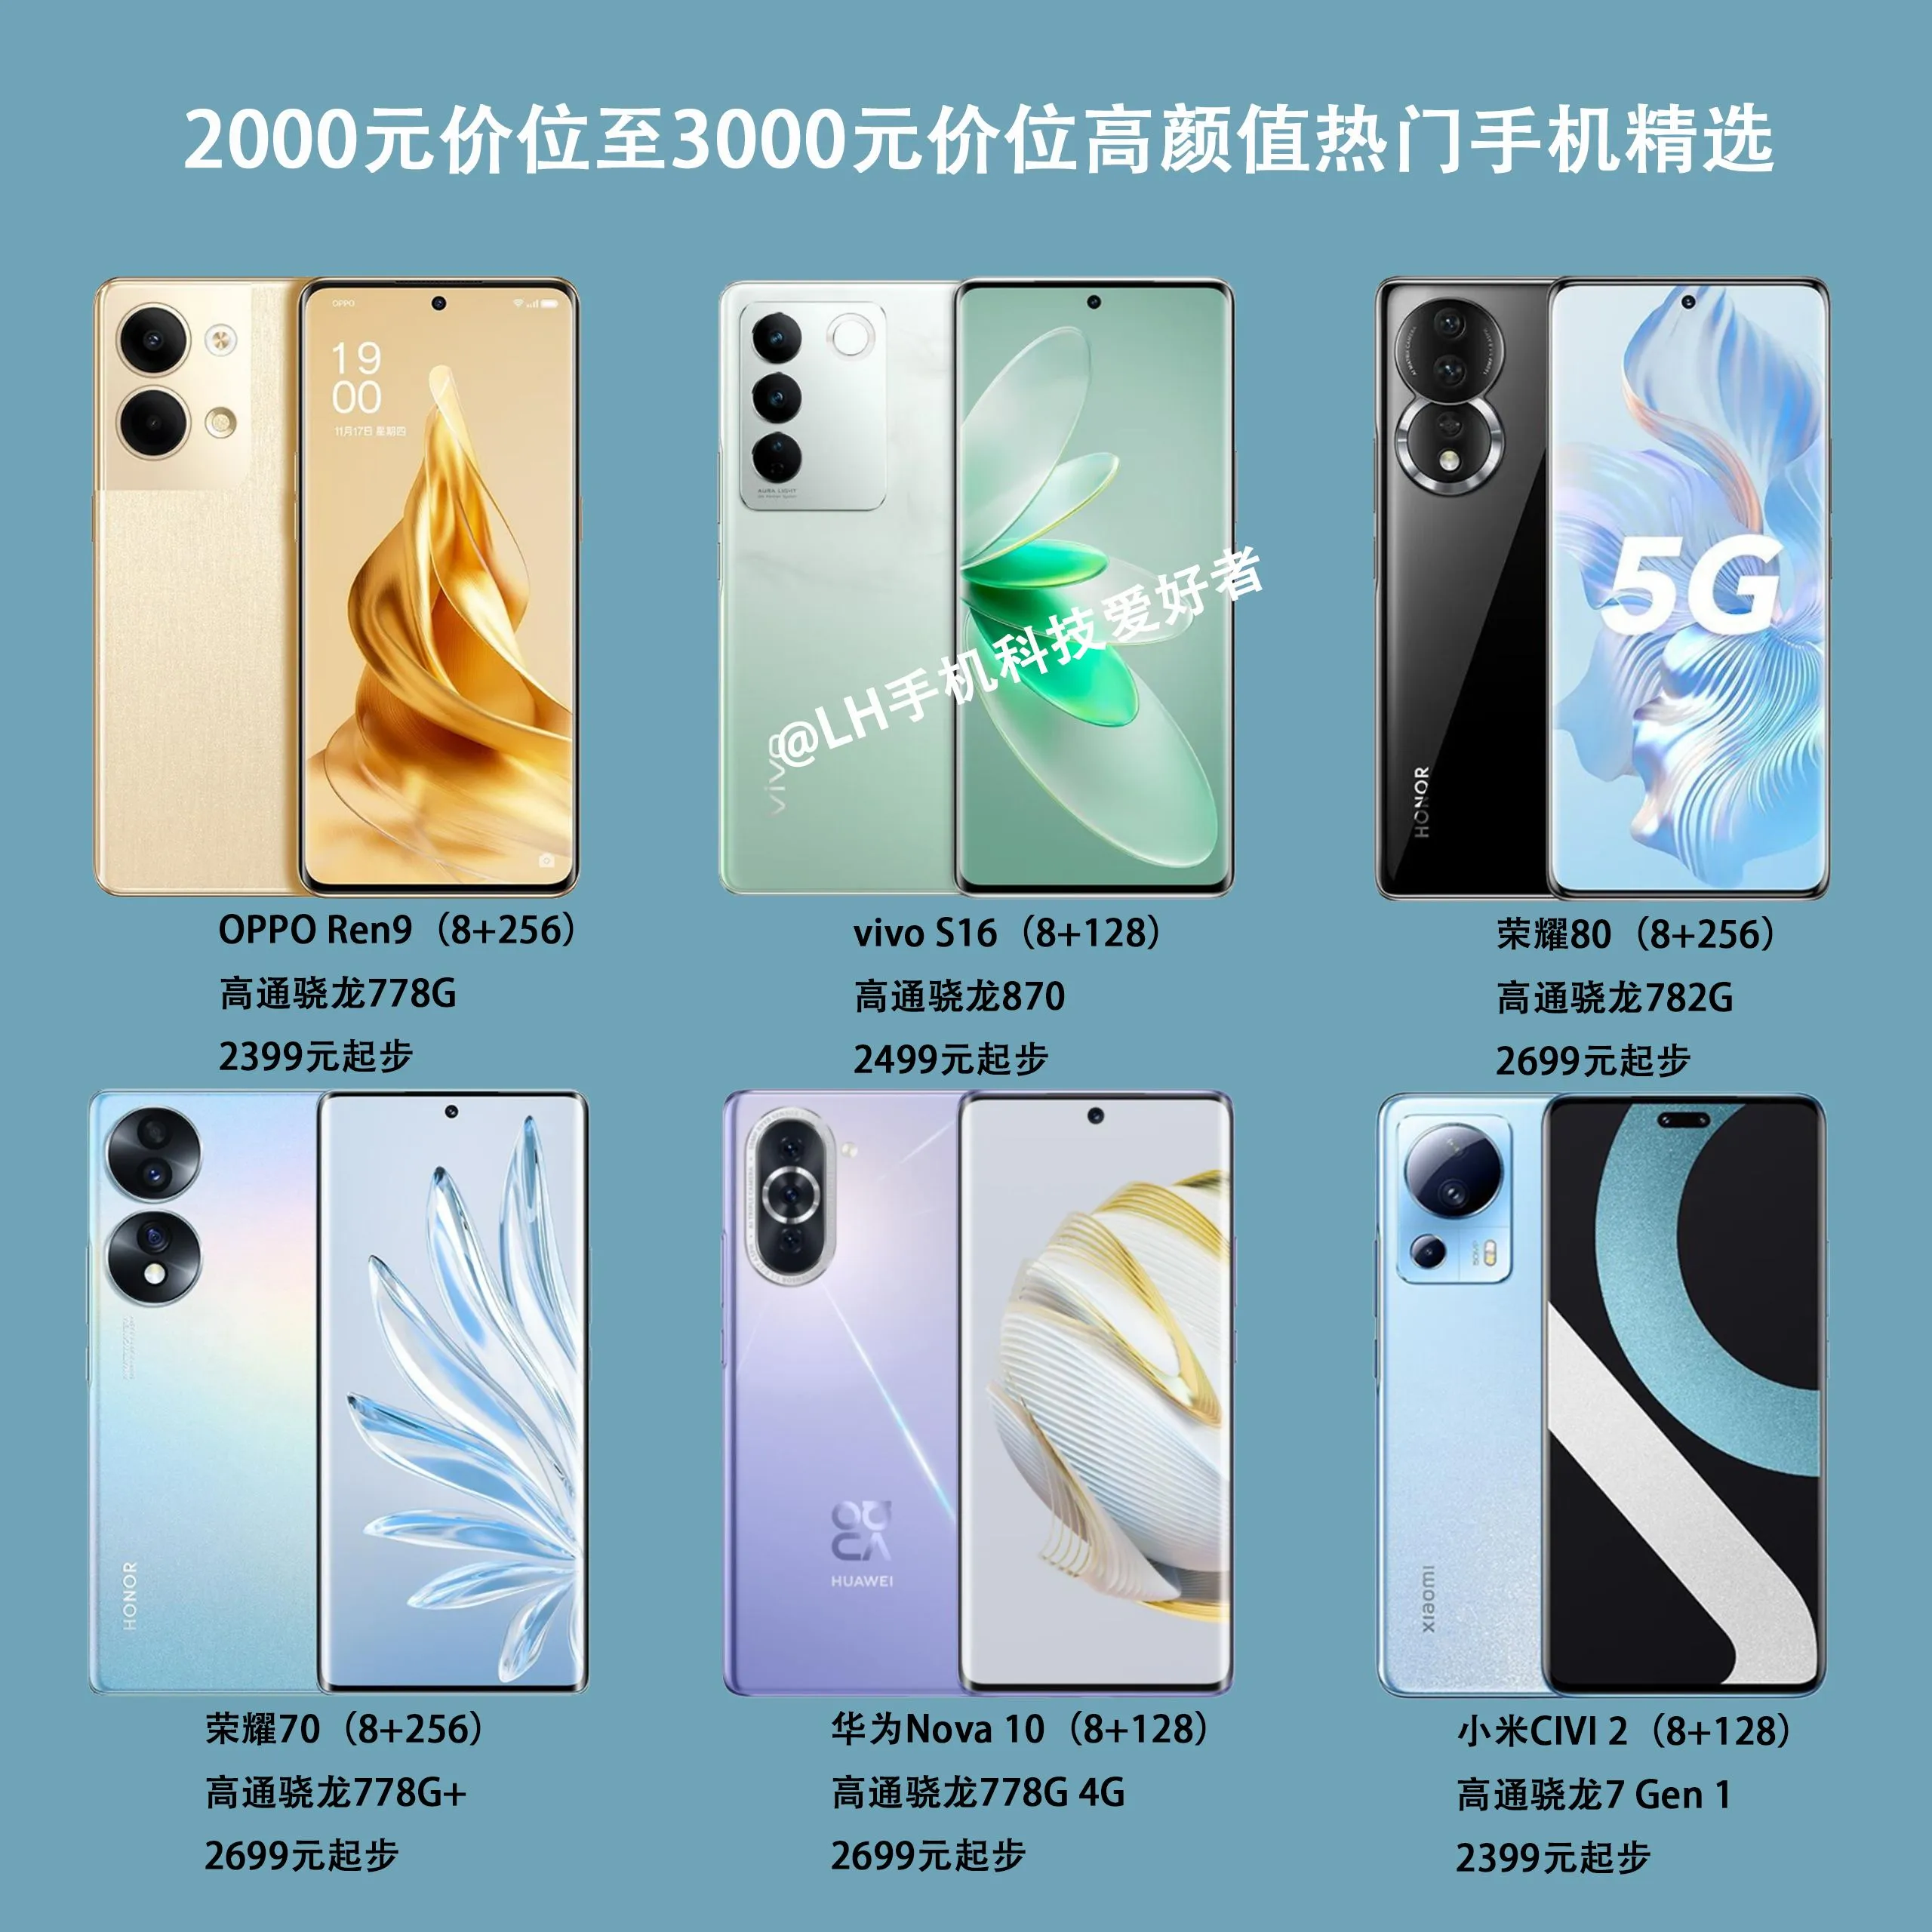 2000元到3000元内手机推荐(2000元价位至3000元价位的高颜值手机可选择)